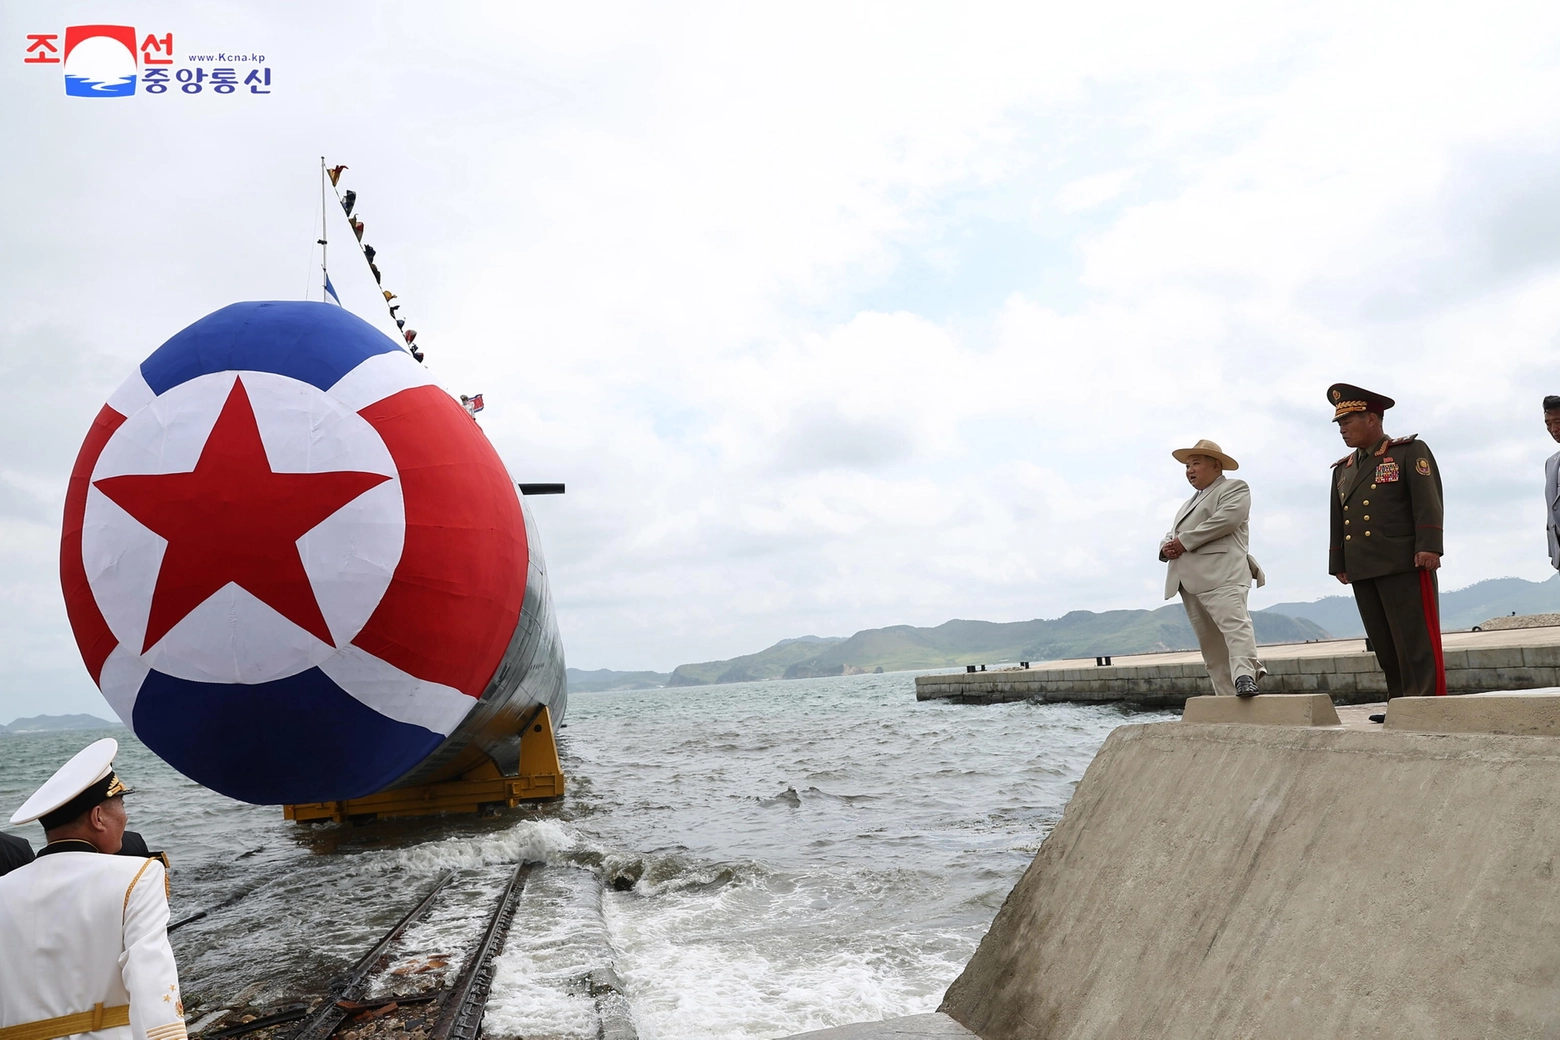 Sottomarino nucleare tattico, cerimonia di presentazione Corea del Nord (Ansa)